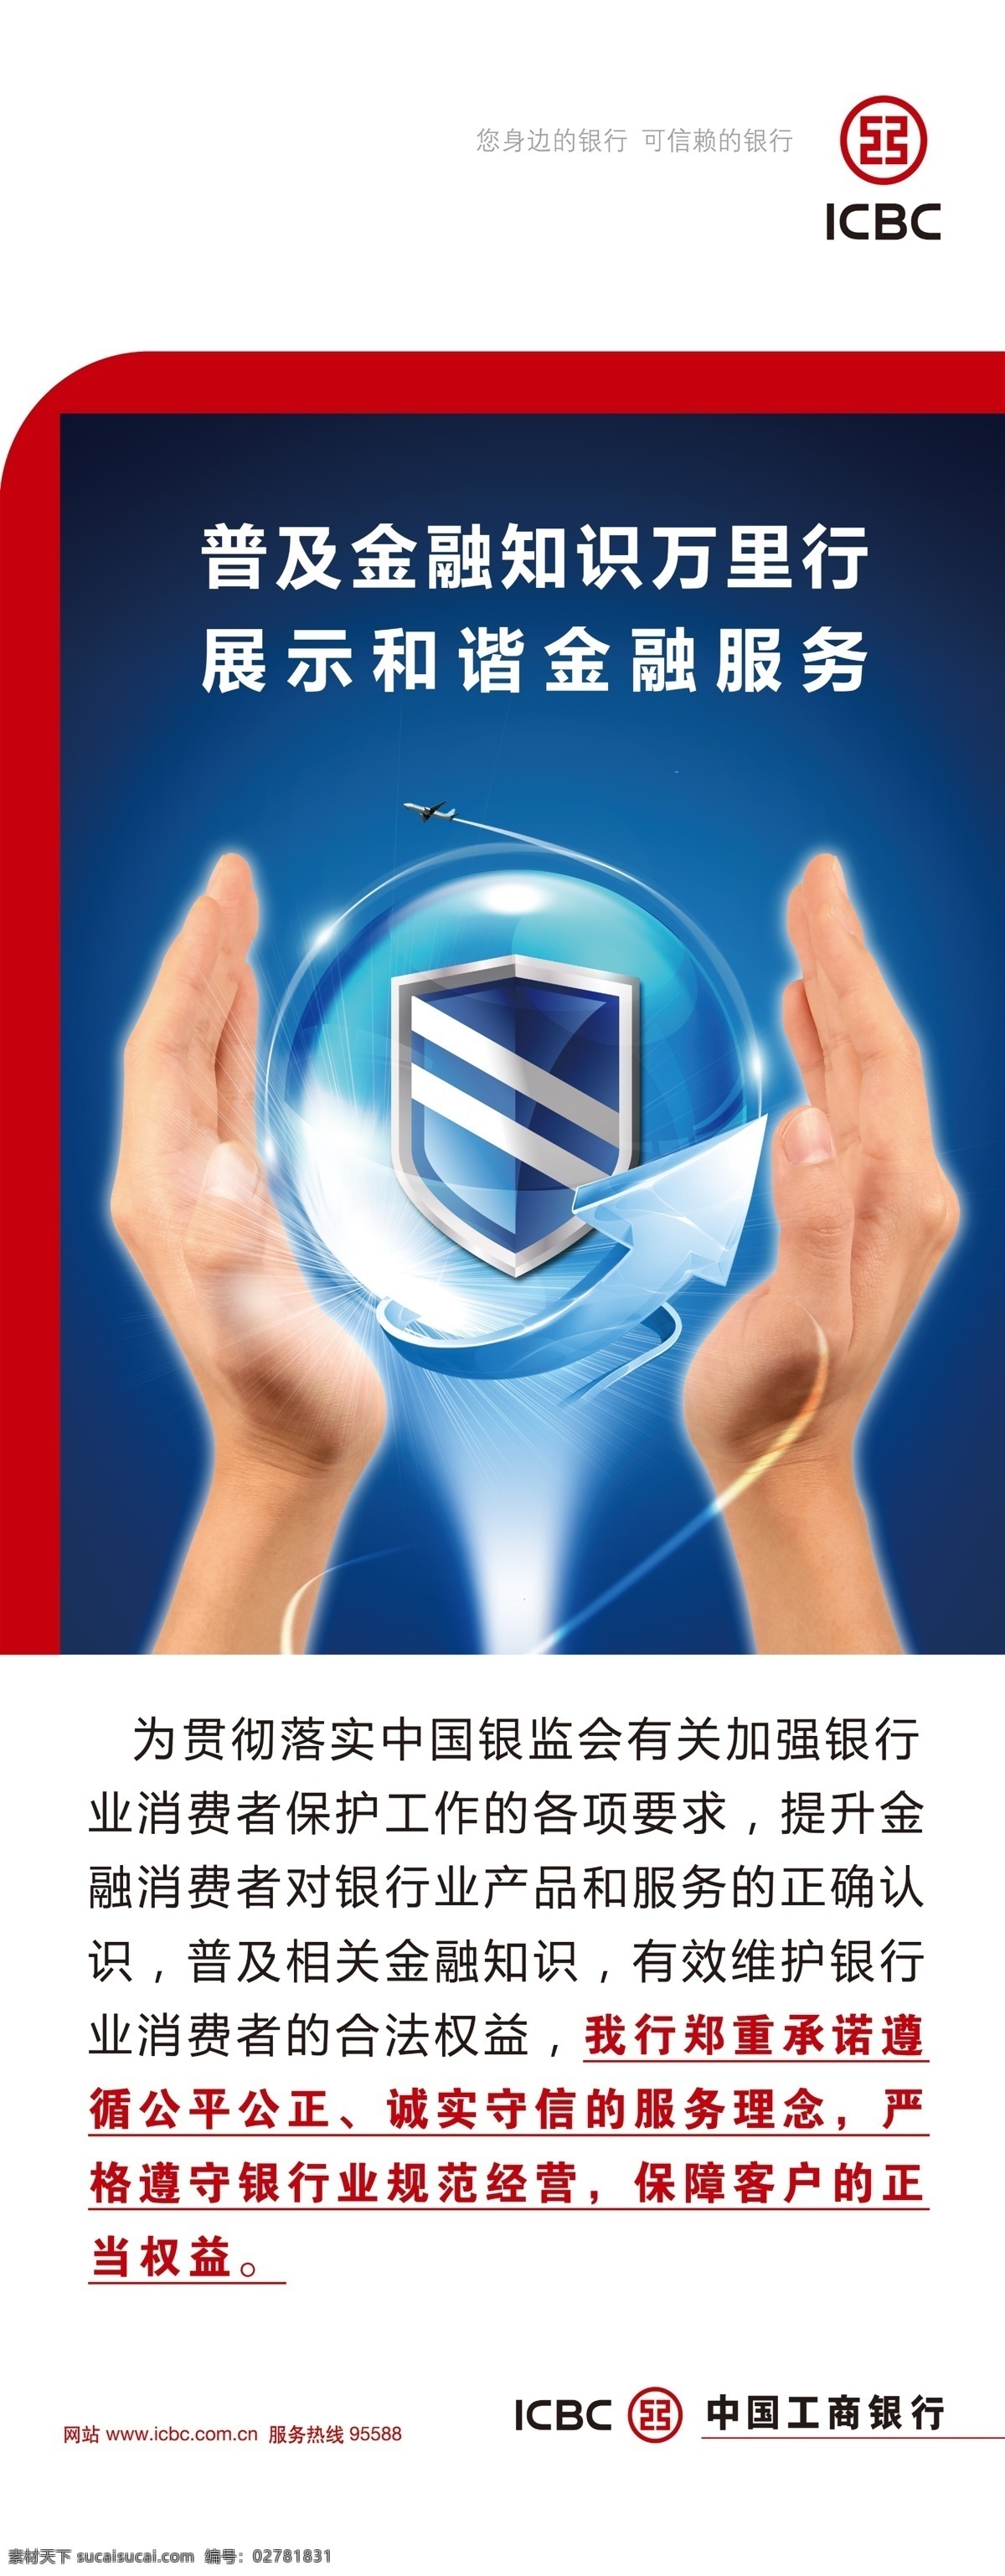 工商 银行 金融 知识 展架 工商银行 logo 金融知识 中国工商银行 护盾 万里行 双手 展板模板 广告设计模板 源文件